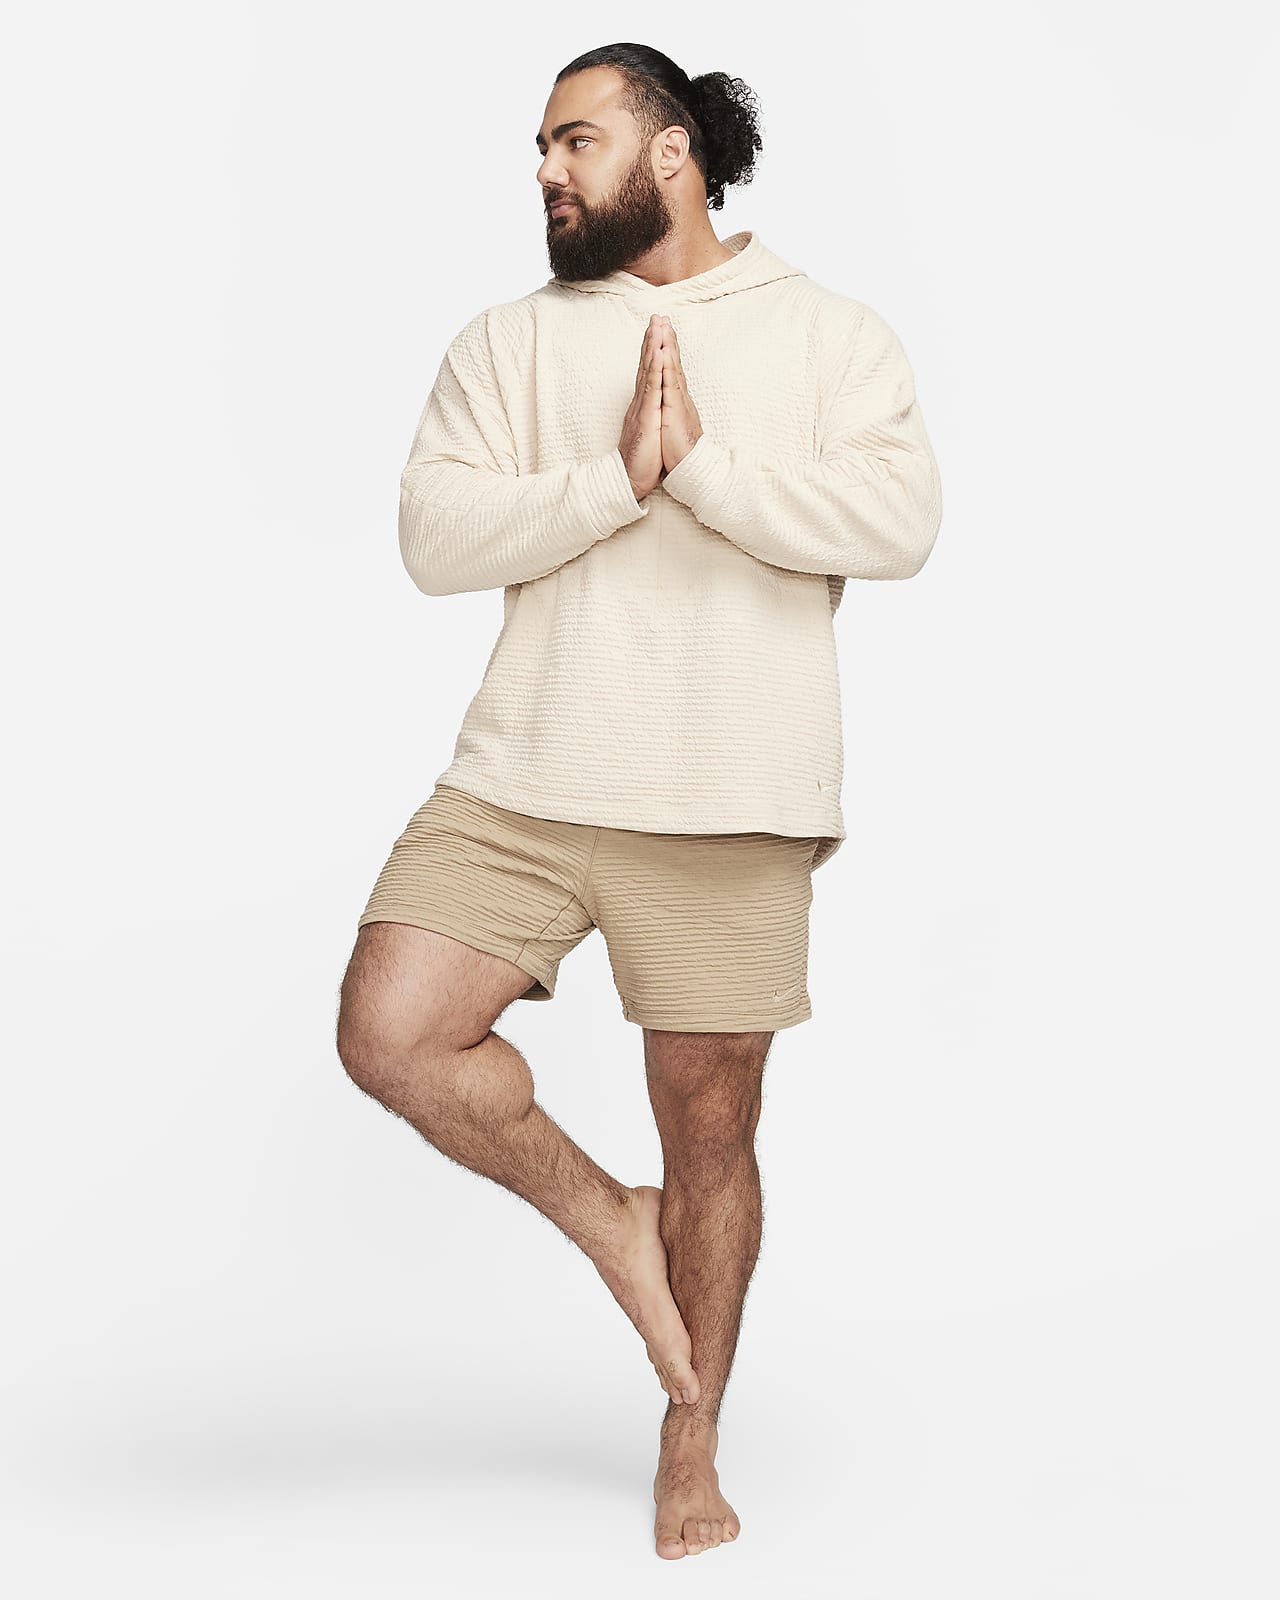 Nike Yoga Men's Dri-FIT 7 Unlined Shorts.